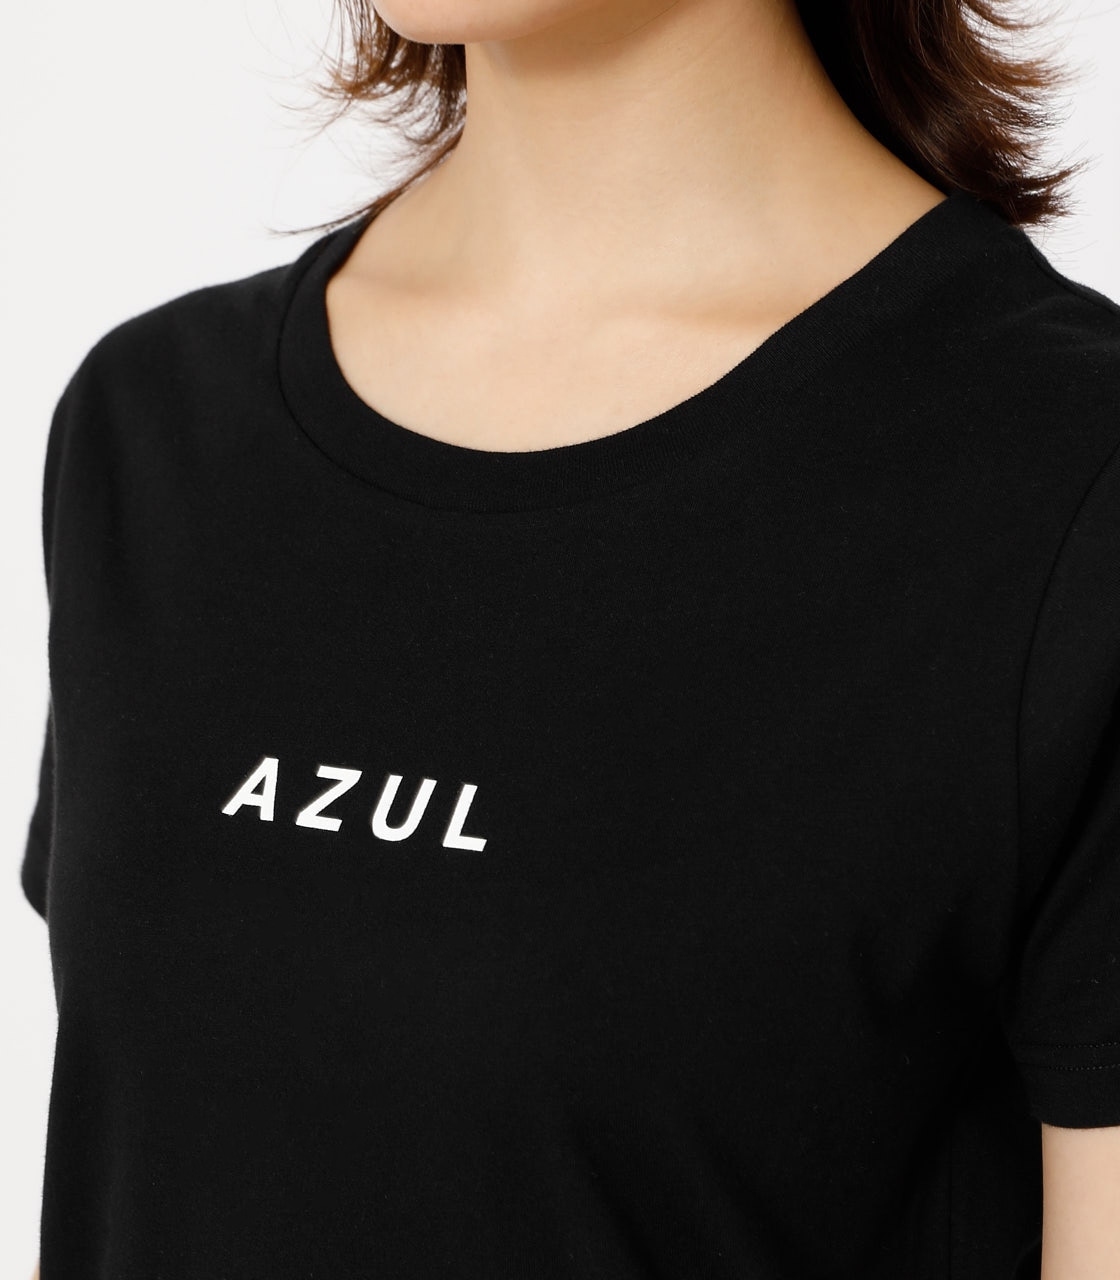 9月21日(木)8：59まで期間限定価格】AZUL LOGO TEE/AZULロゴTシャツ ...